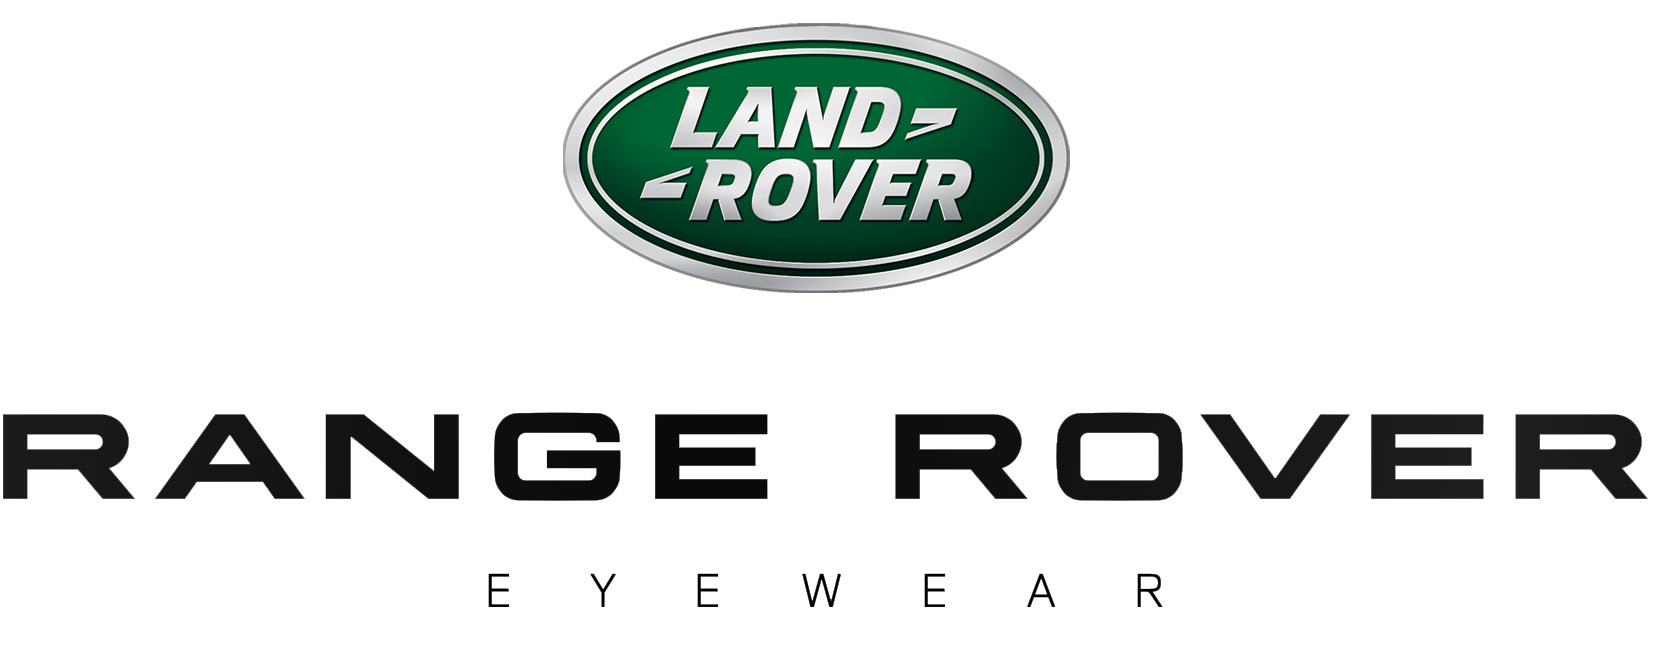 RANGE ROVER Eyewear